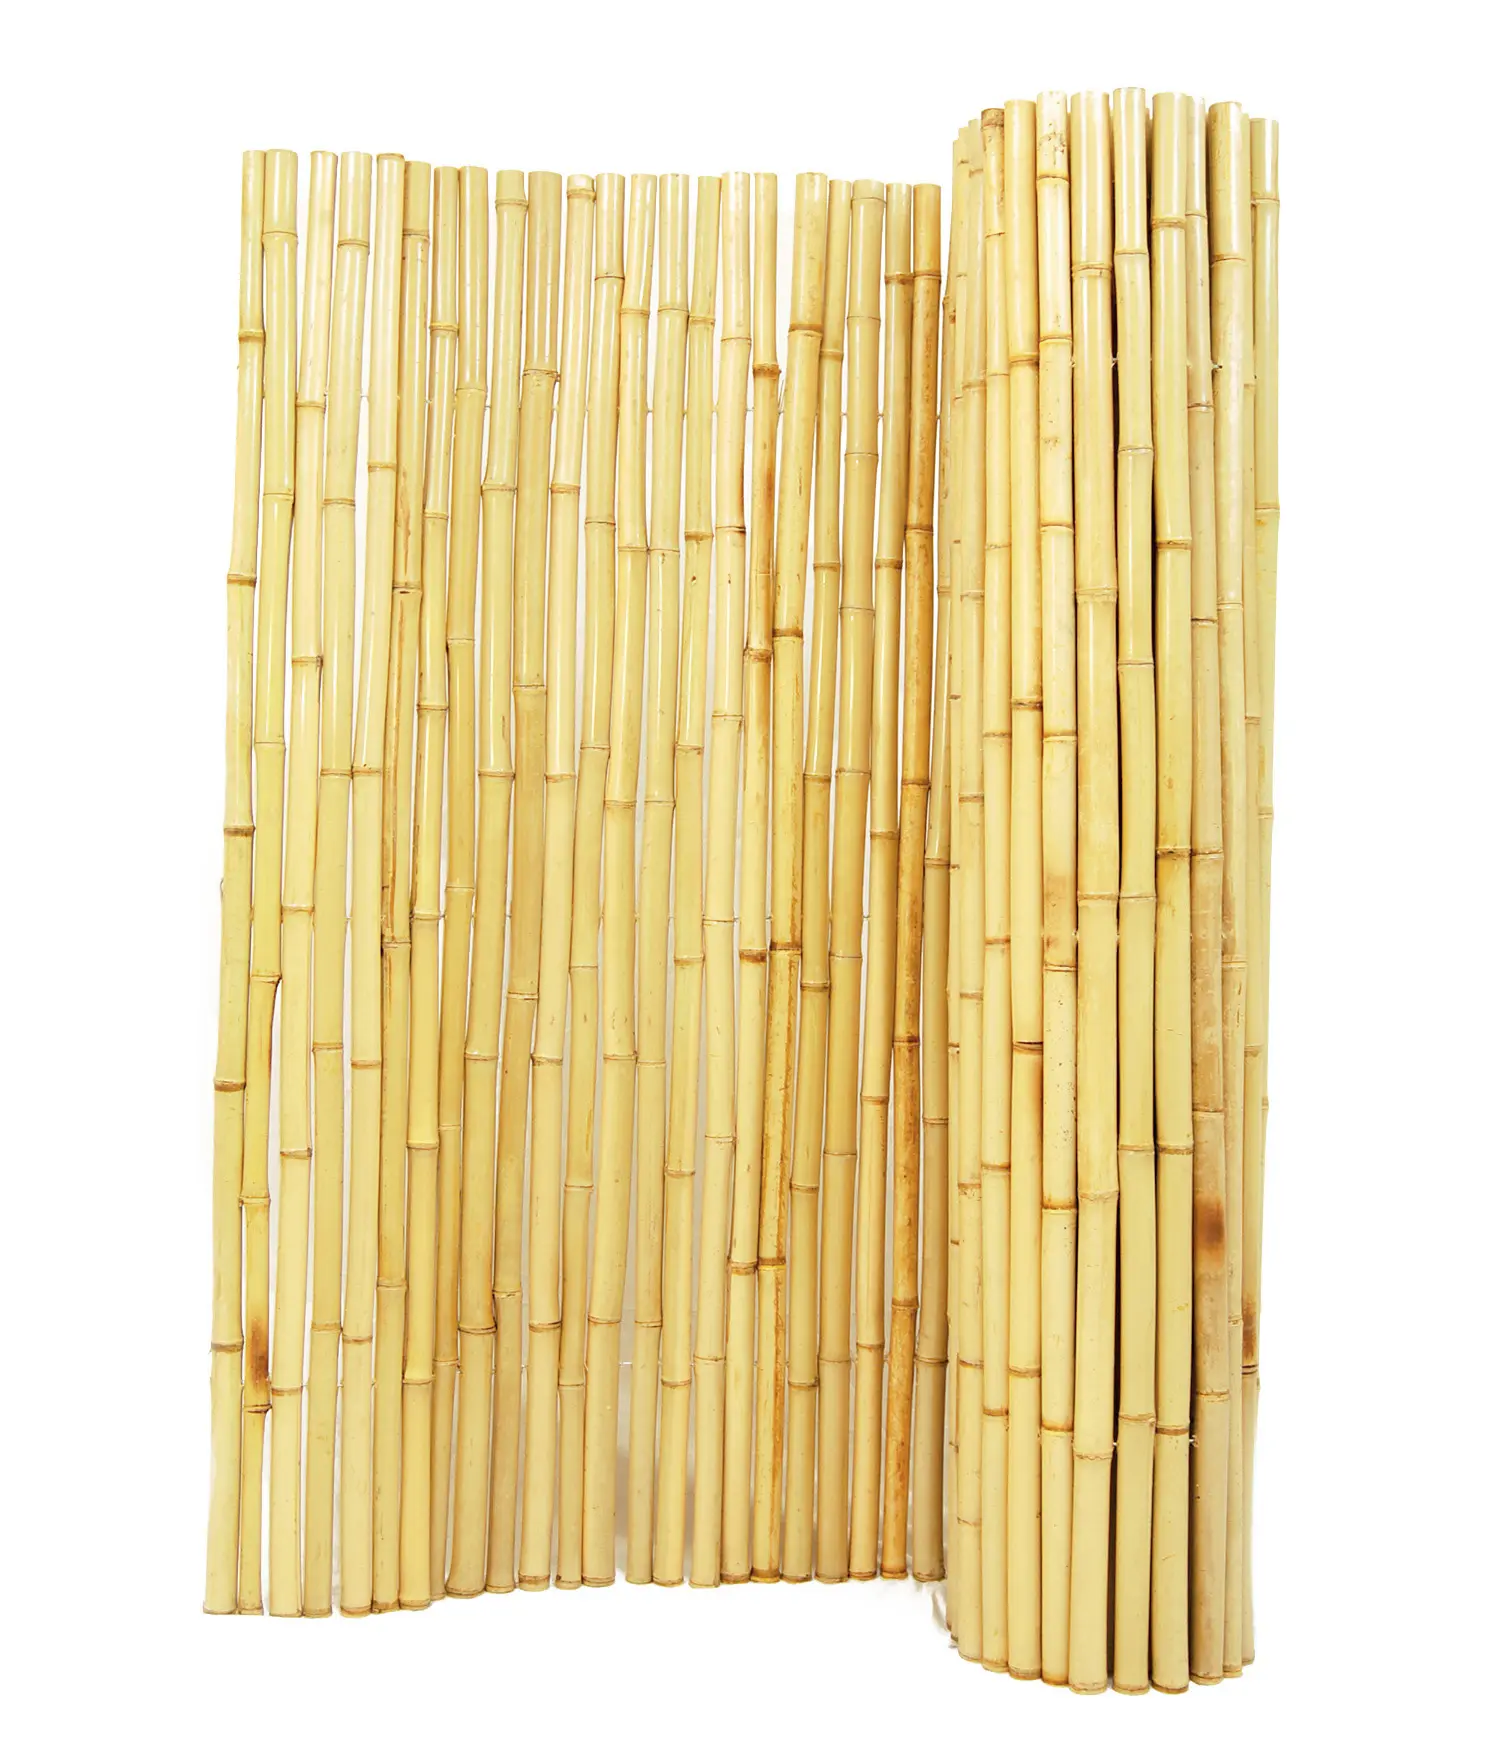 Bahçe için yüksek kaliteli duman bambu çitleri 100% vietnamca doğal orman bambu çevre dostu montajı kolay